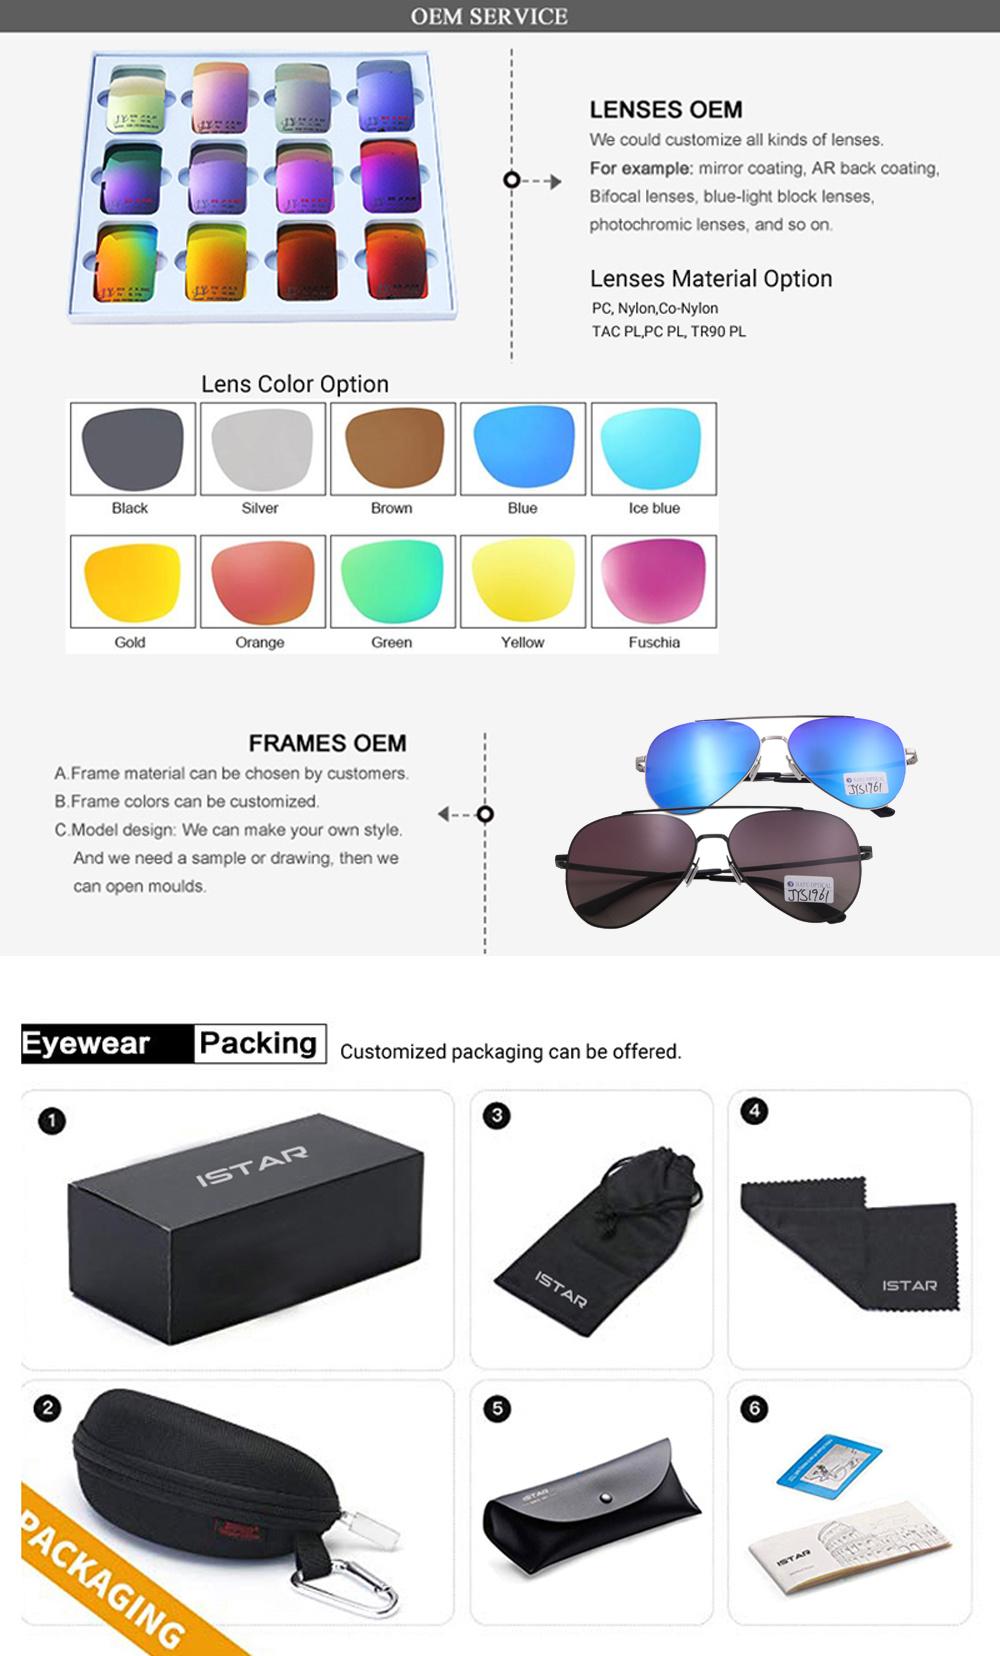 Round Plastic Frame Full Lenses Latest Designer Sunglasses for Woman